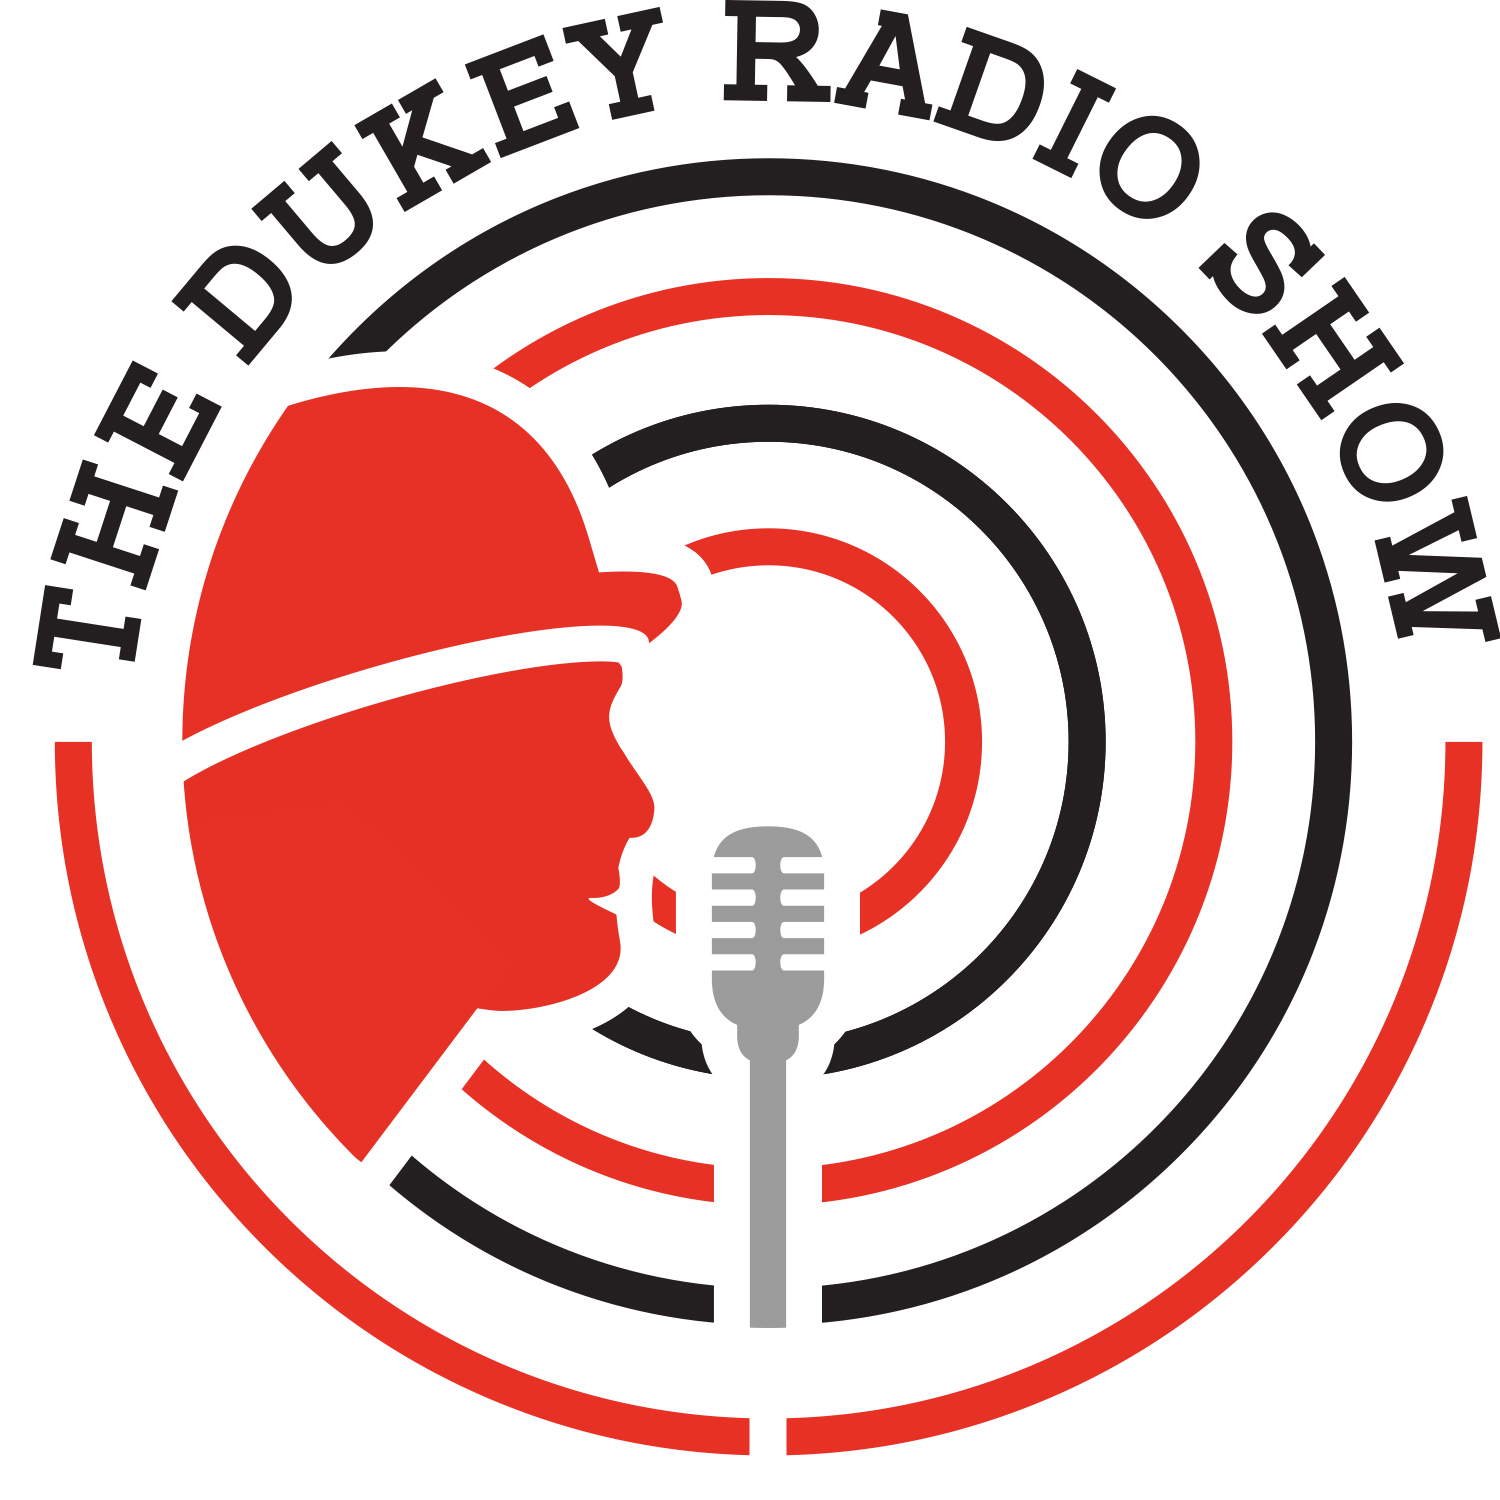 The Dukey Radio Show